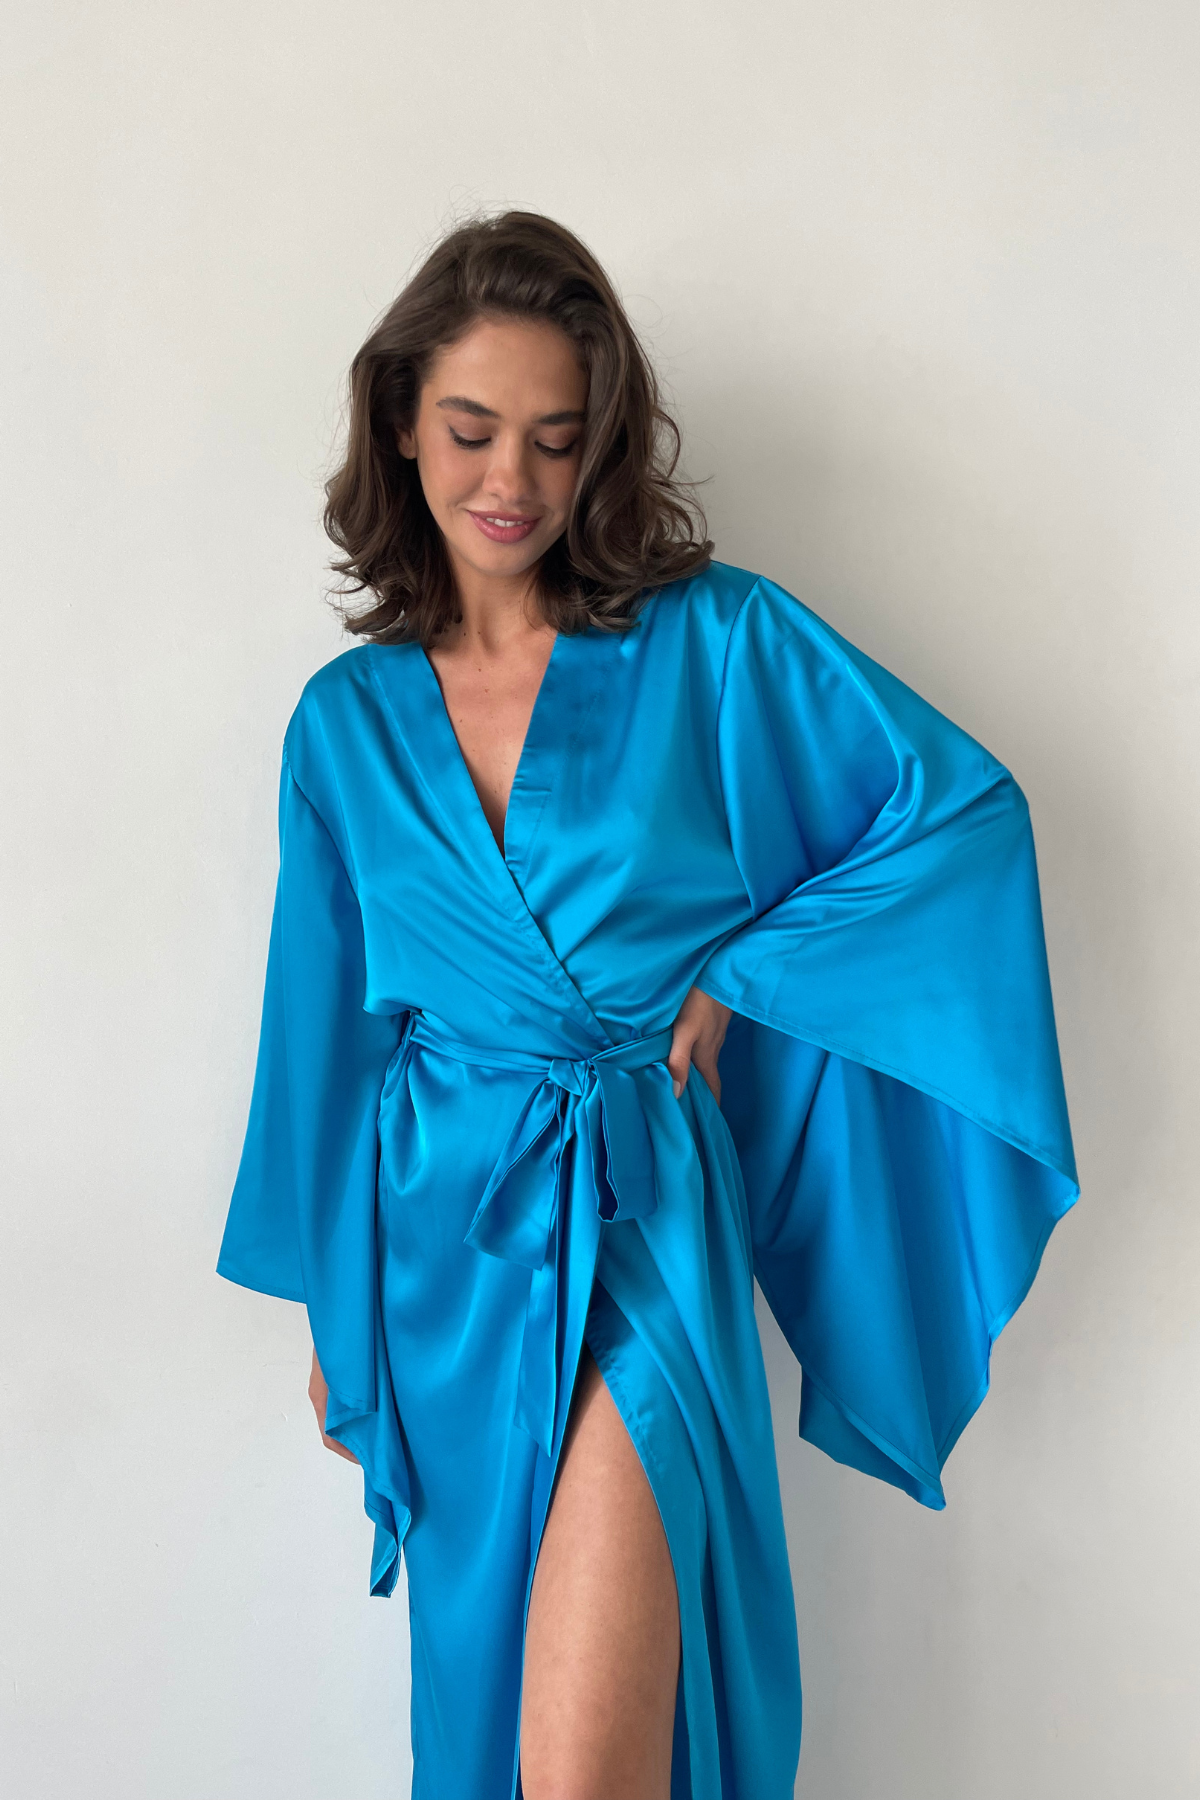 Sea Neon Blue Kimono Robe by Angie's Showroom